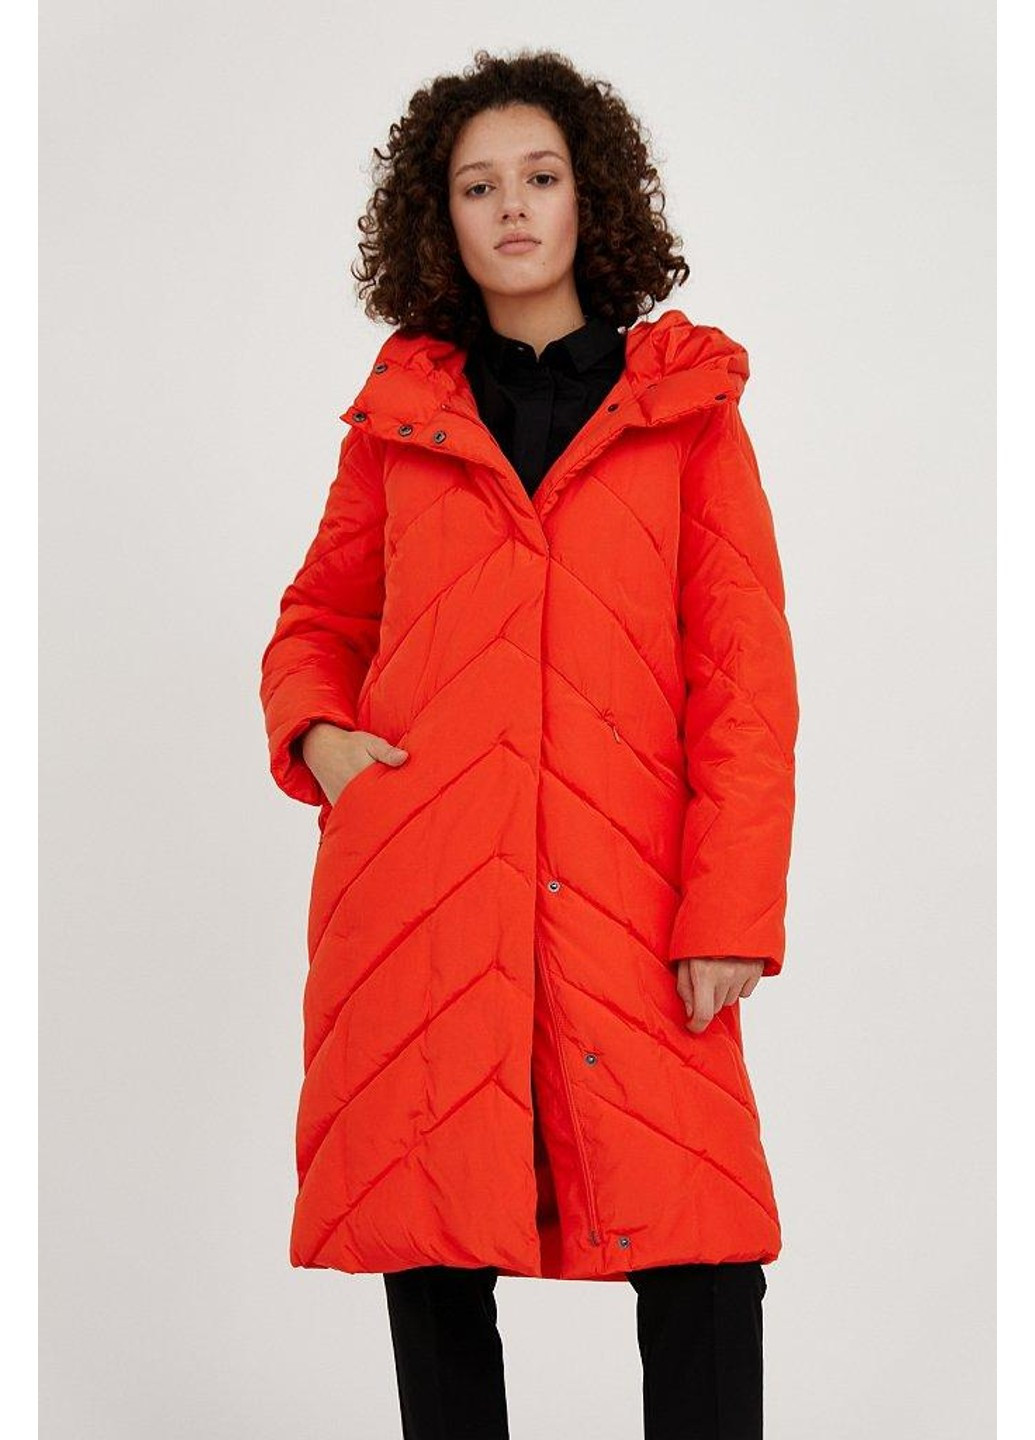 Красная зимняя куртка a20-11006-420 Finn Flare